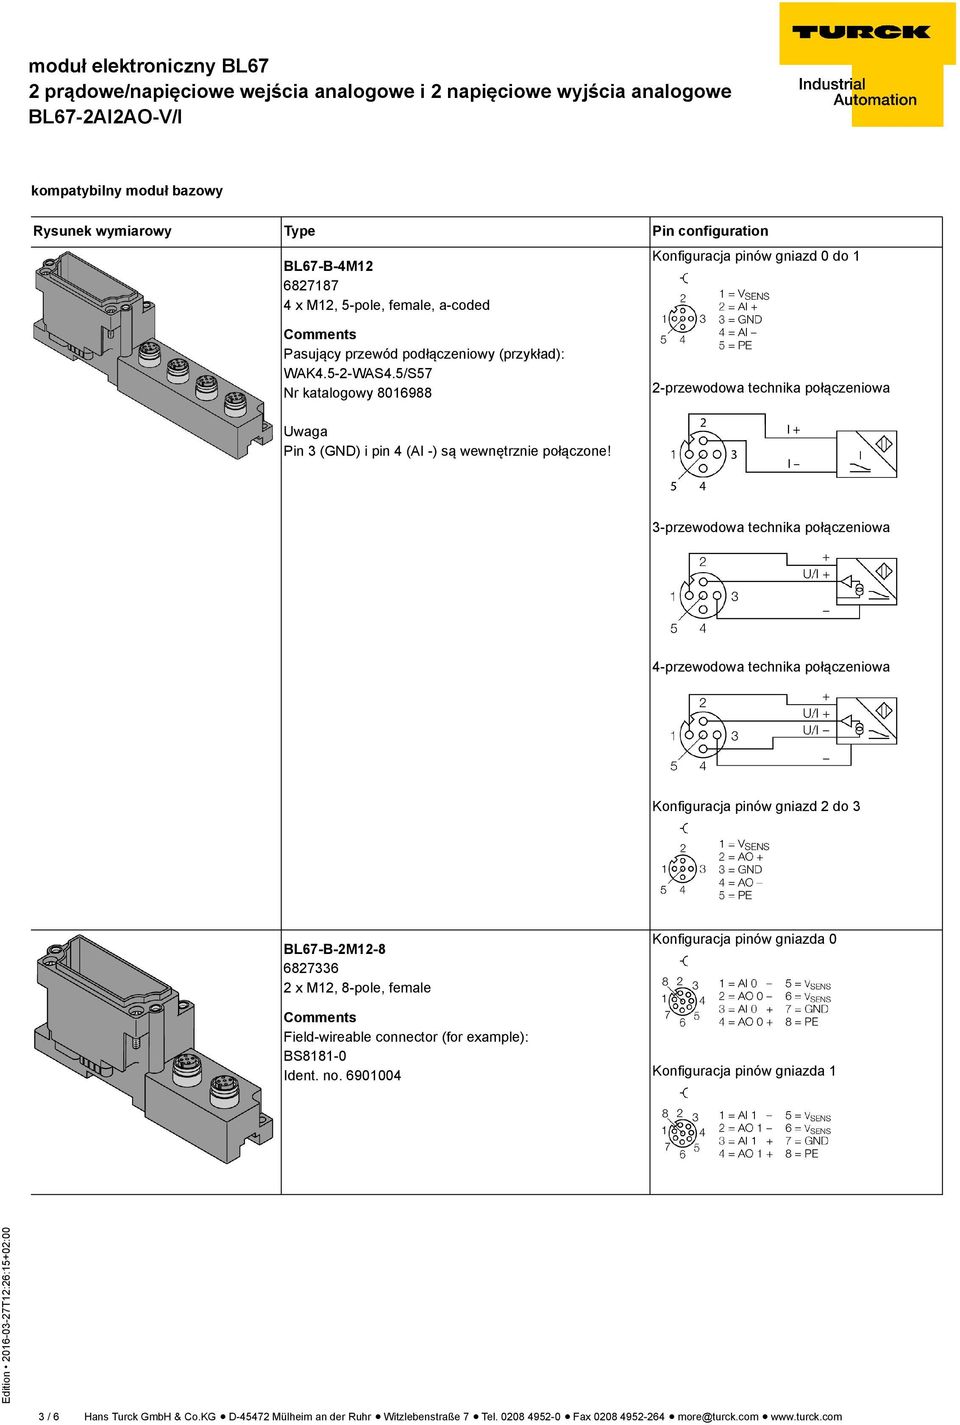 3-przewodowa technika połączeniowa 4-przewodowa technika połączeniowa Konfiguracja pinów gniazd 2 do 3 BL67-B-2M12-8 6827336 2 x M12, 8-pole, female Comments Field-wireable connector (for